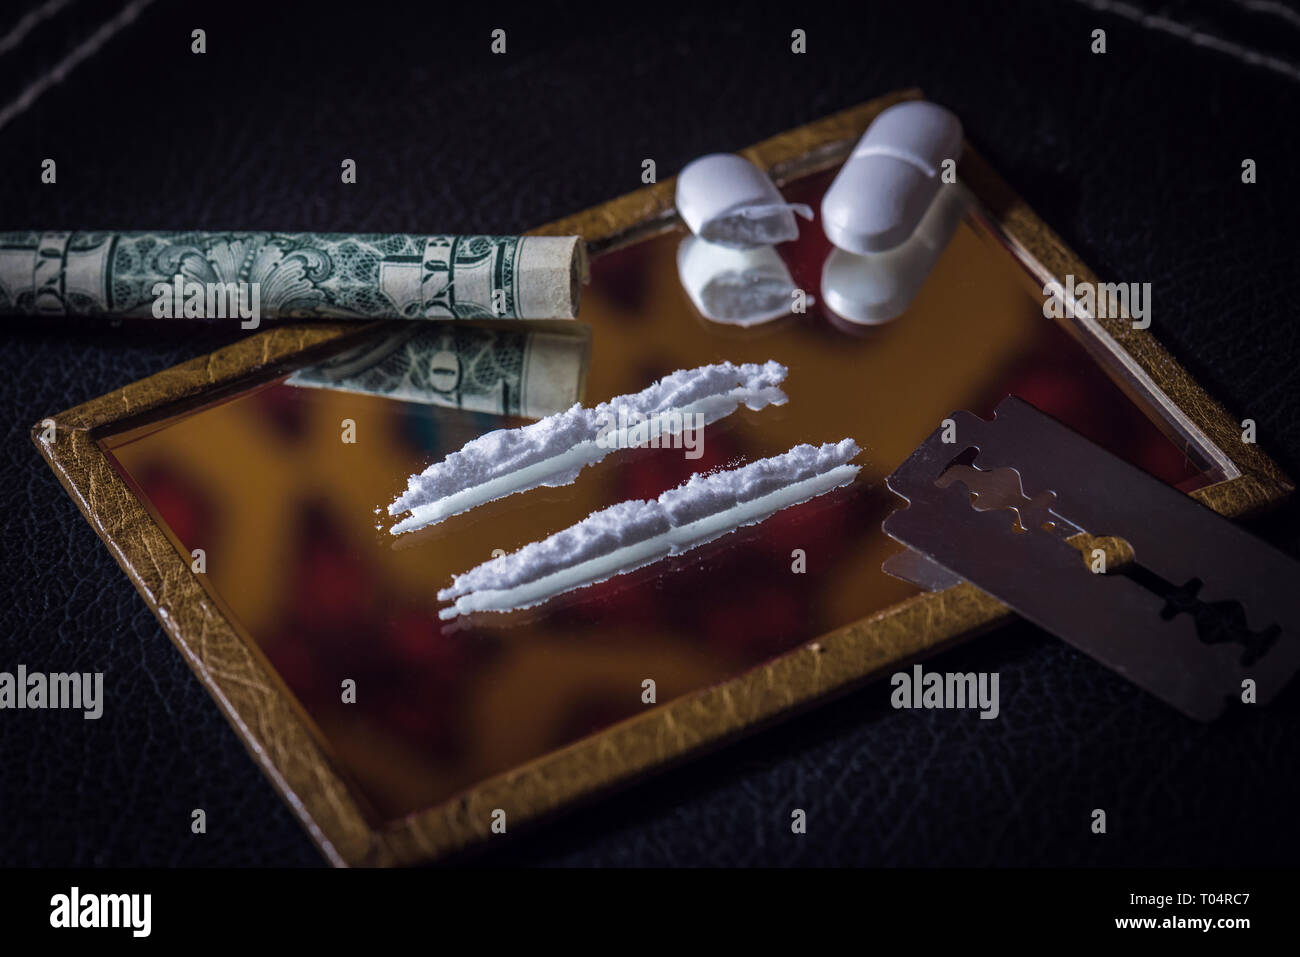 Imagen conceptual del uso indebido de drogas con dos líneas en un espejo y una media pastilla picada Foto de stock